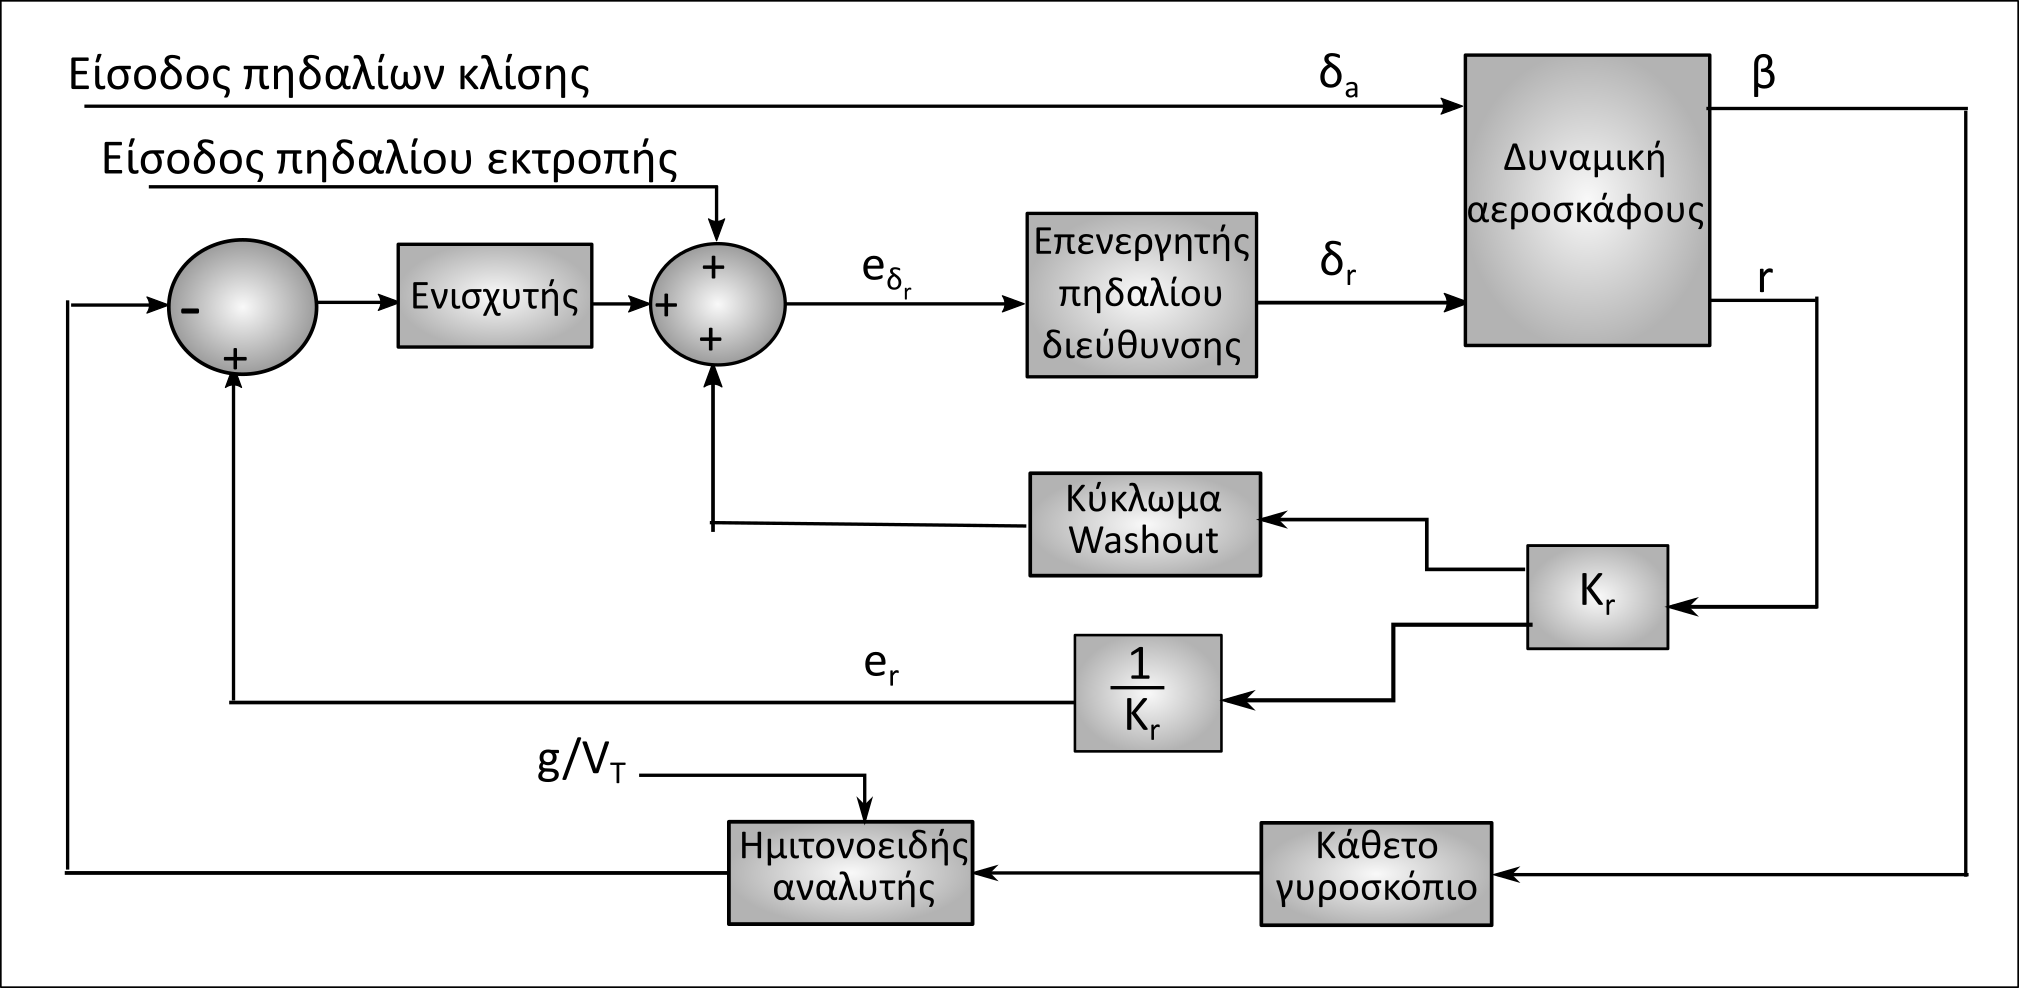 Η εικόνα δεν εμφανίζεται/Image is not displayed - Δομικό διάγραμμα ΣΑΕ για την εκτέλεση συντονισμένου ελιγμού στροφής με ανάδραση της πλαγιολίσθησης β και του ρυθμού εκτροπής r με κύκλωμα Washout και ημιτονοειδή αναλυτή, στo πηδάλιo εκτροπής / acceleration, sideslip feedbak, rudder CS, washout, sin